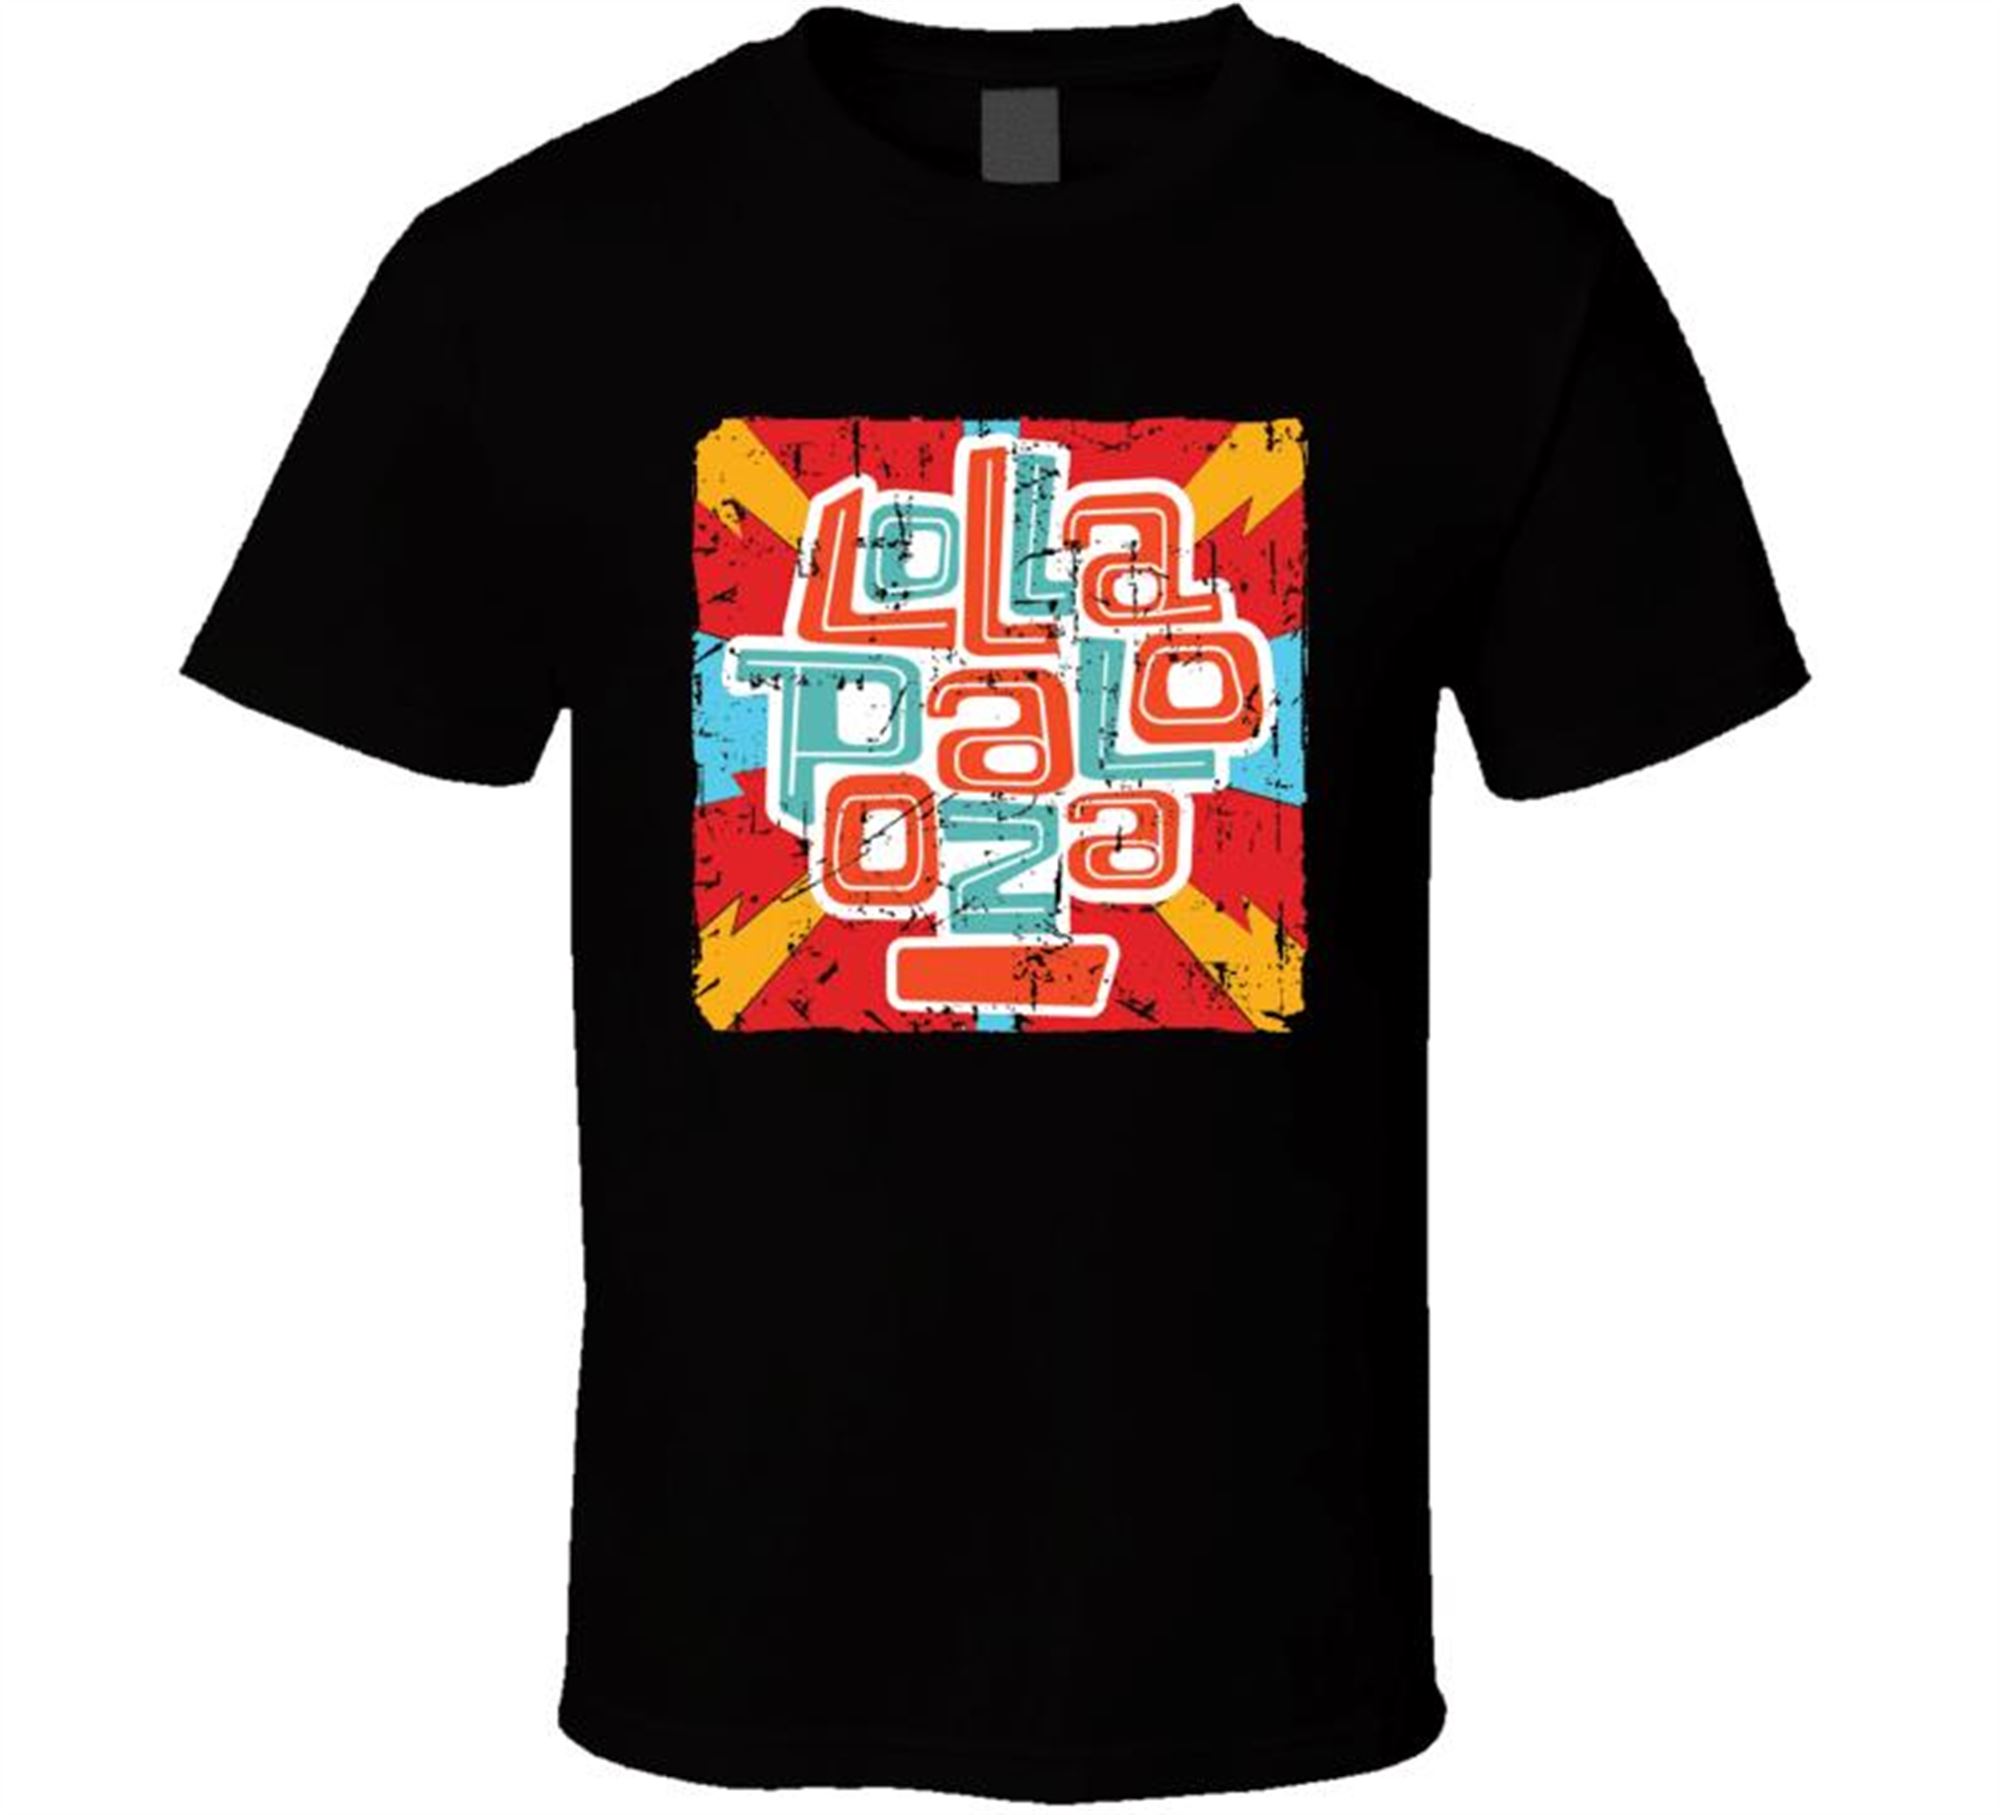 Lollapalooza Unisex T Shirt Size Up To 5xl